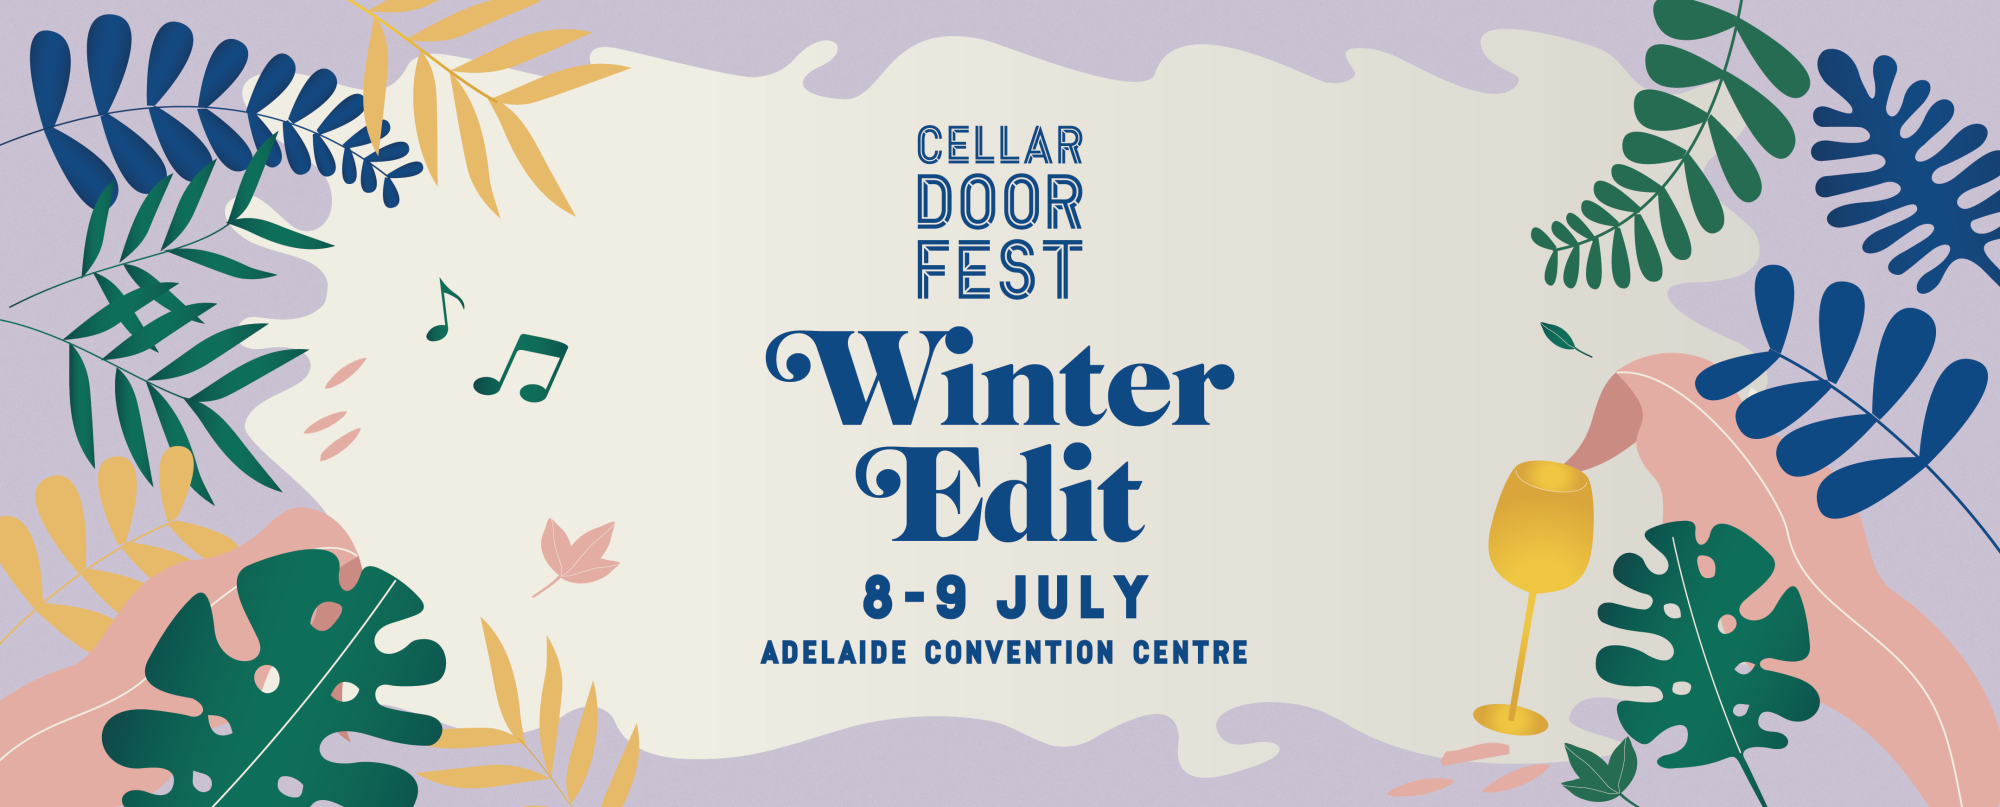 Cellar Door Fest Winter Edit